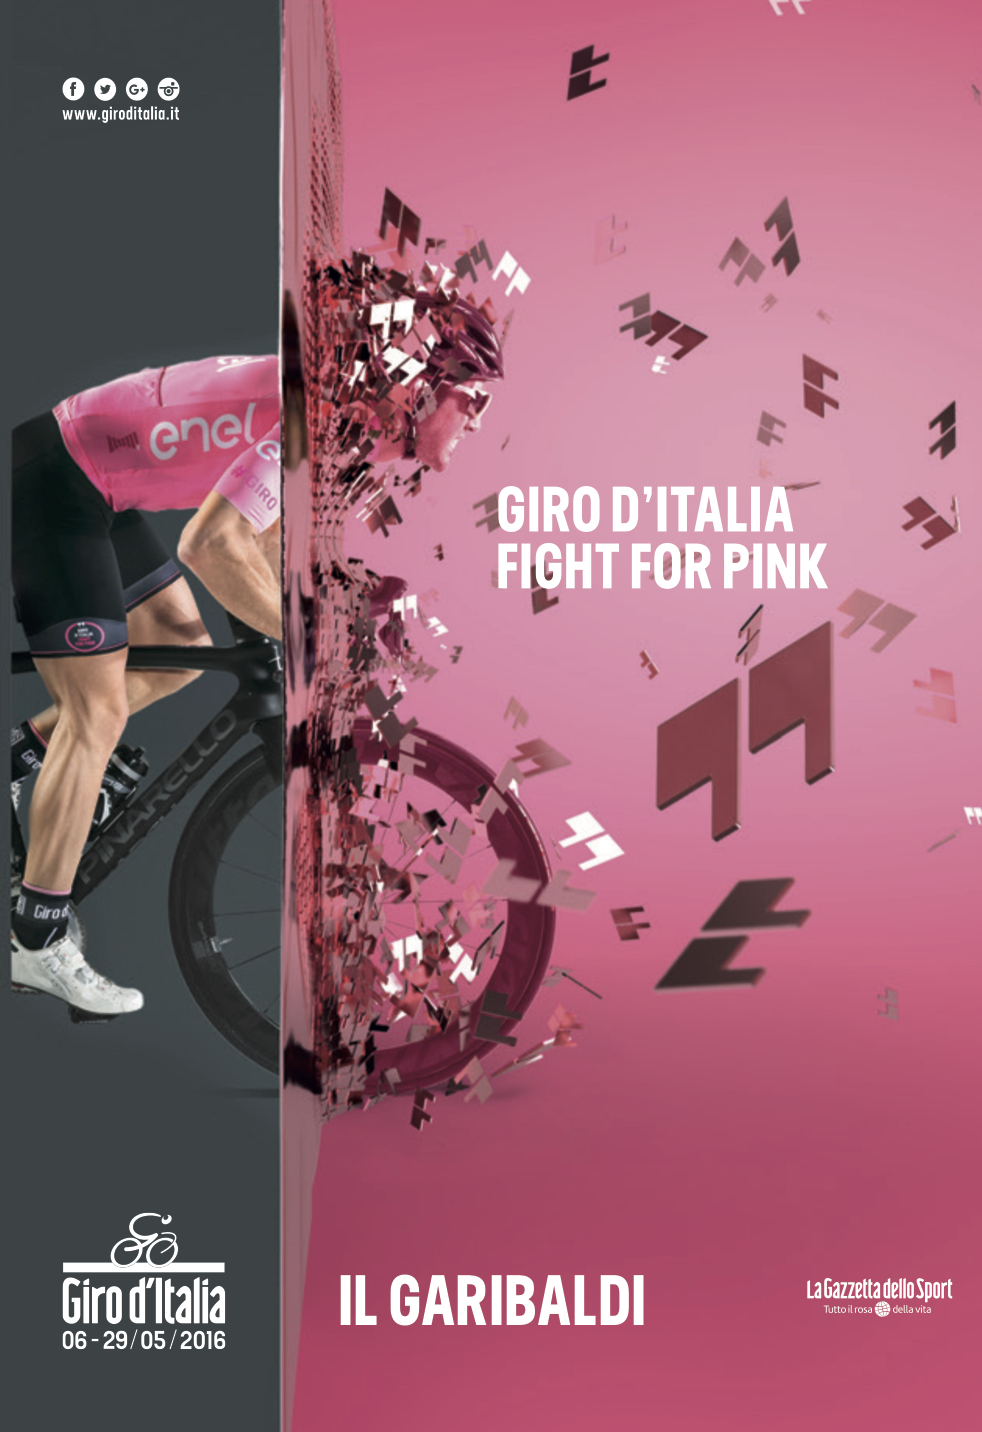 Il Garibaldi del Giro d'Italia 2016